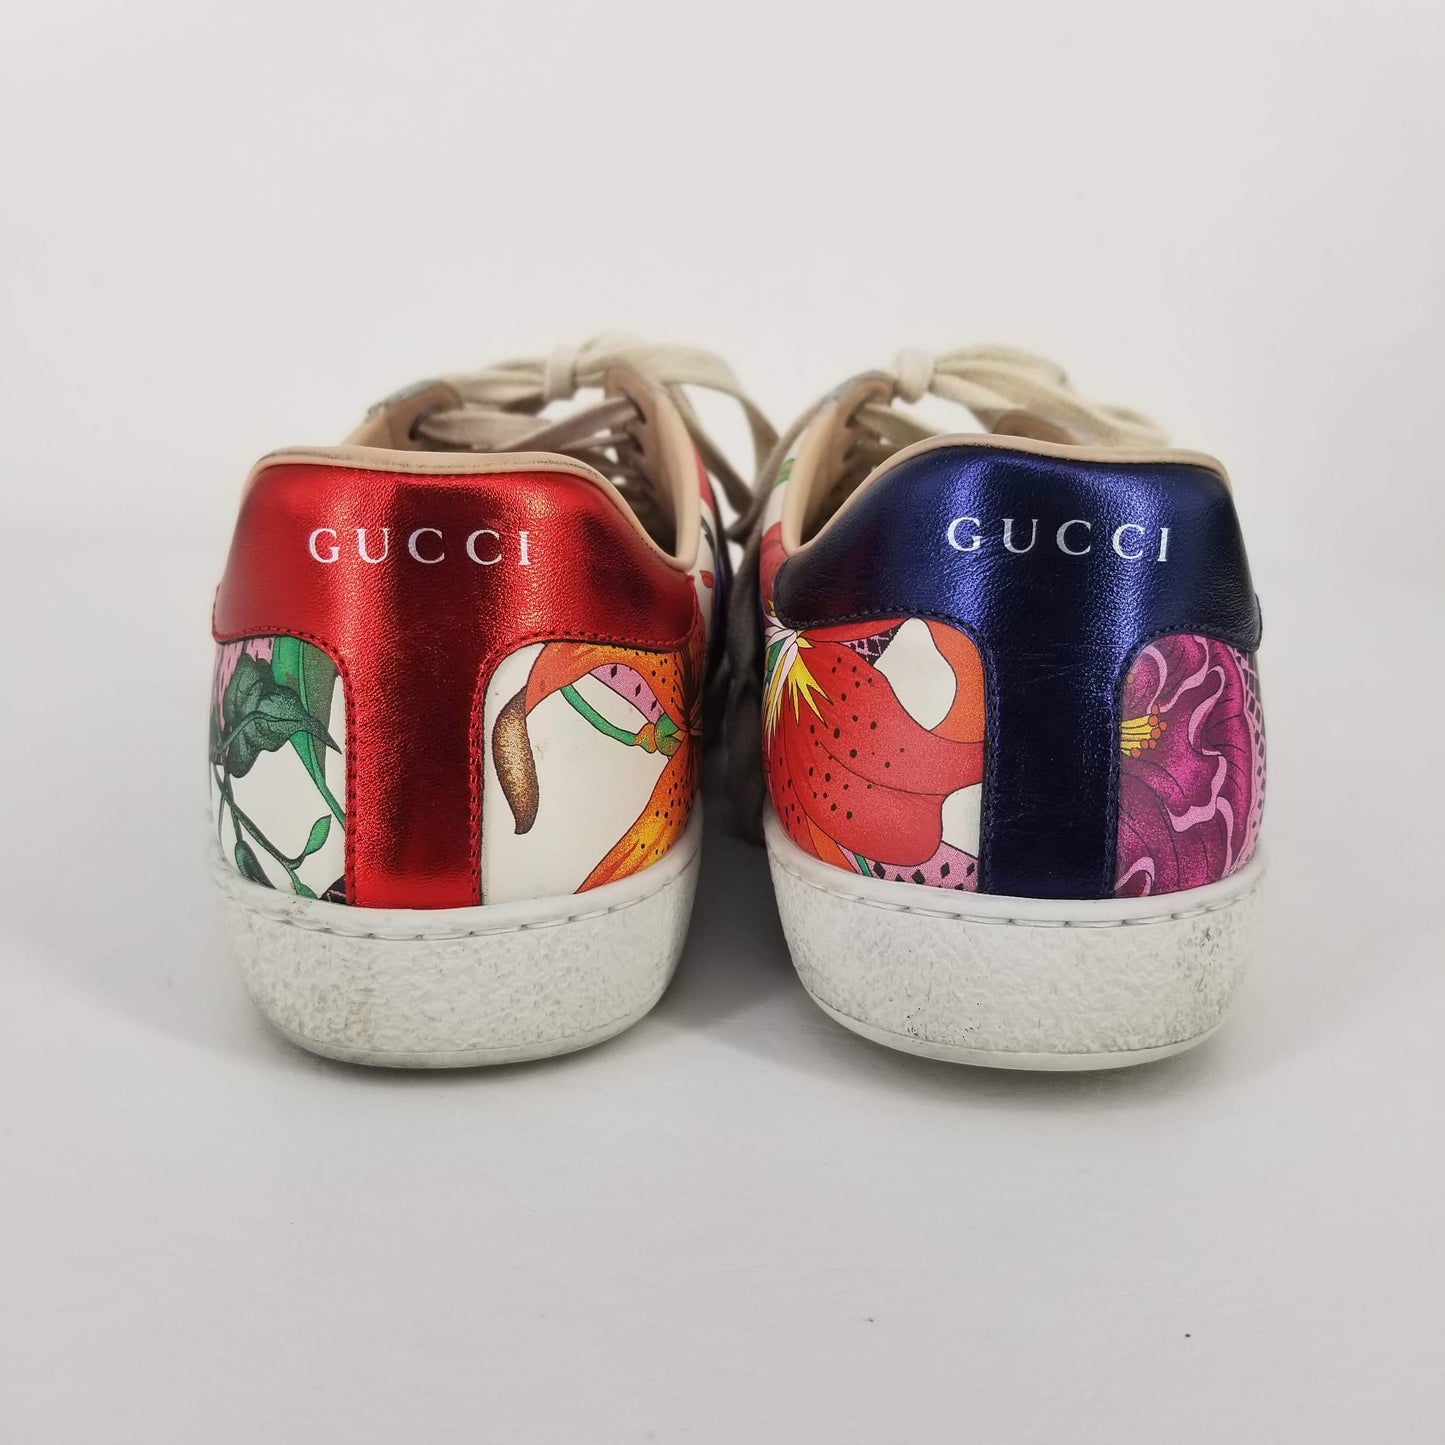 Authentic Gucci *RARE* 2016 Ltd. Ed. Gucci Garden Ace Trainers